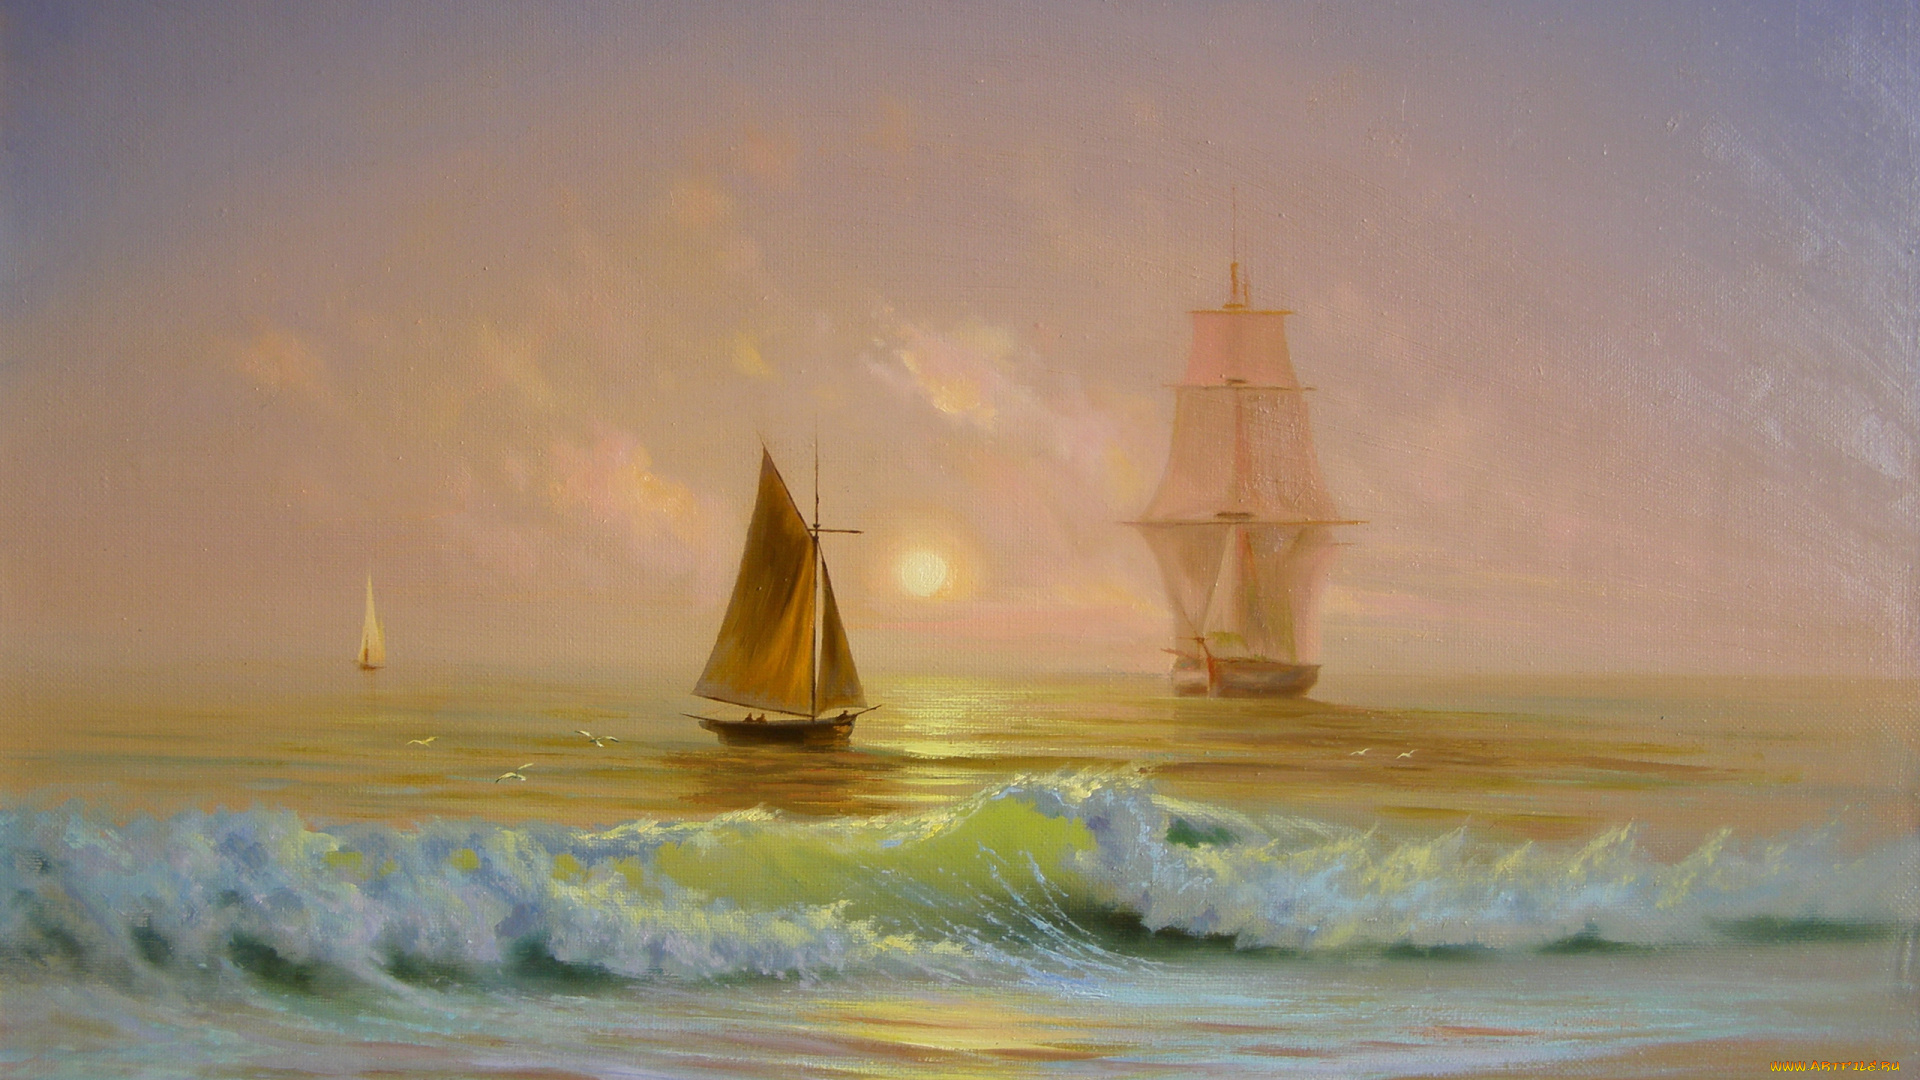 корабли, рисованные, море, волны, небо, солнце, лодки, яхты, парусники, чайки